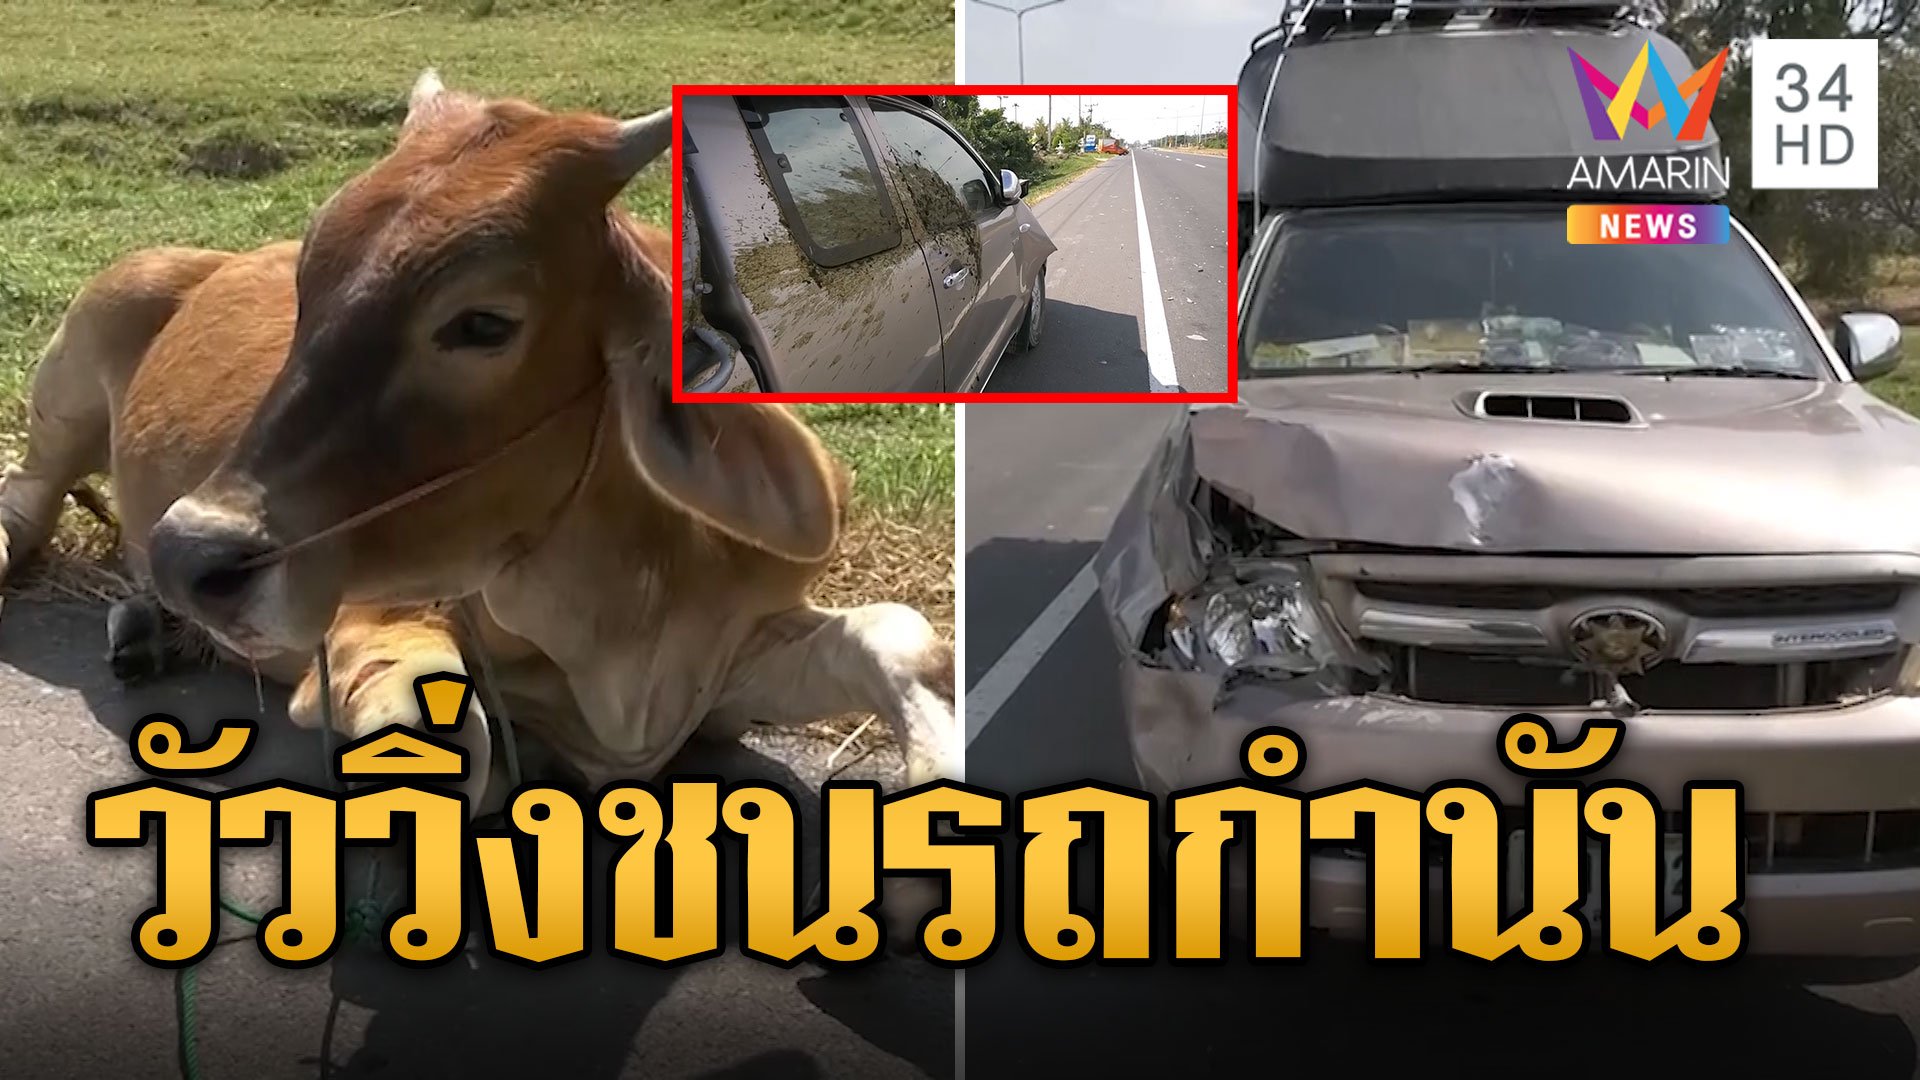  วัวพุ่งชนรถหม้อน้ำแตก ตามหาเจ้าของไม่ได้ ตร.ให้ประมูลหาเงินค่าซ่อม | ข่าวอรุณอมรินทร์ | 10 ธ.ค. 66 | AMARIN TVHD34